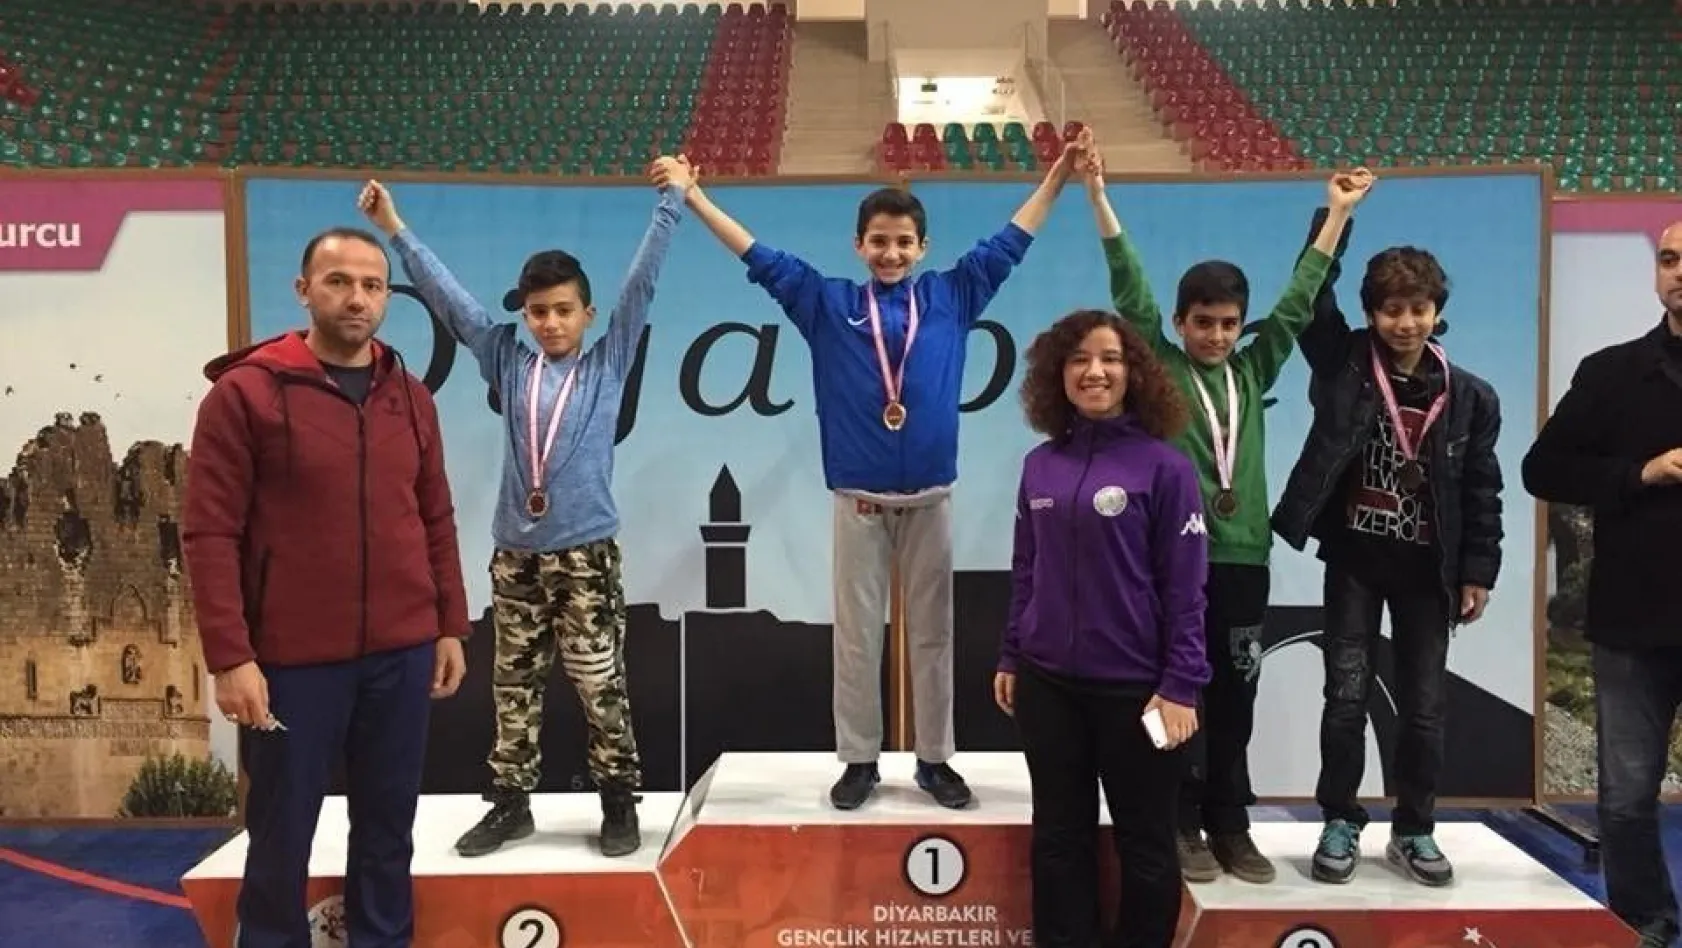 Diyarbakır Bilfen-Bilnet Okulları karatede rakip tanımıyor
